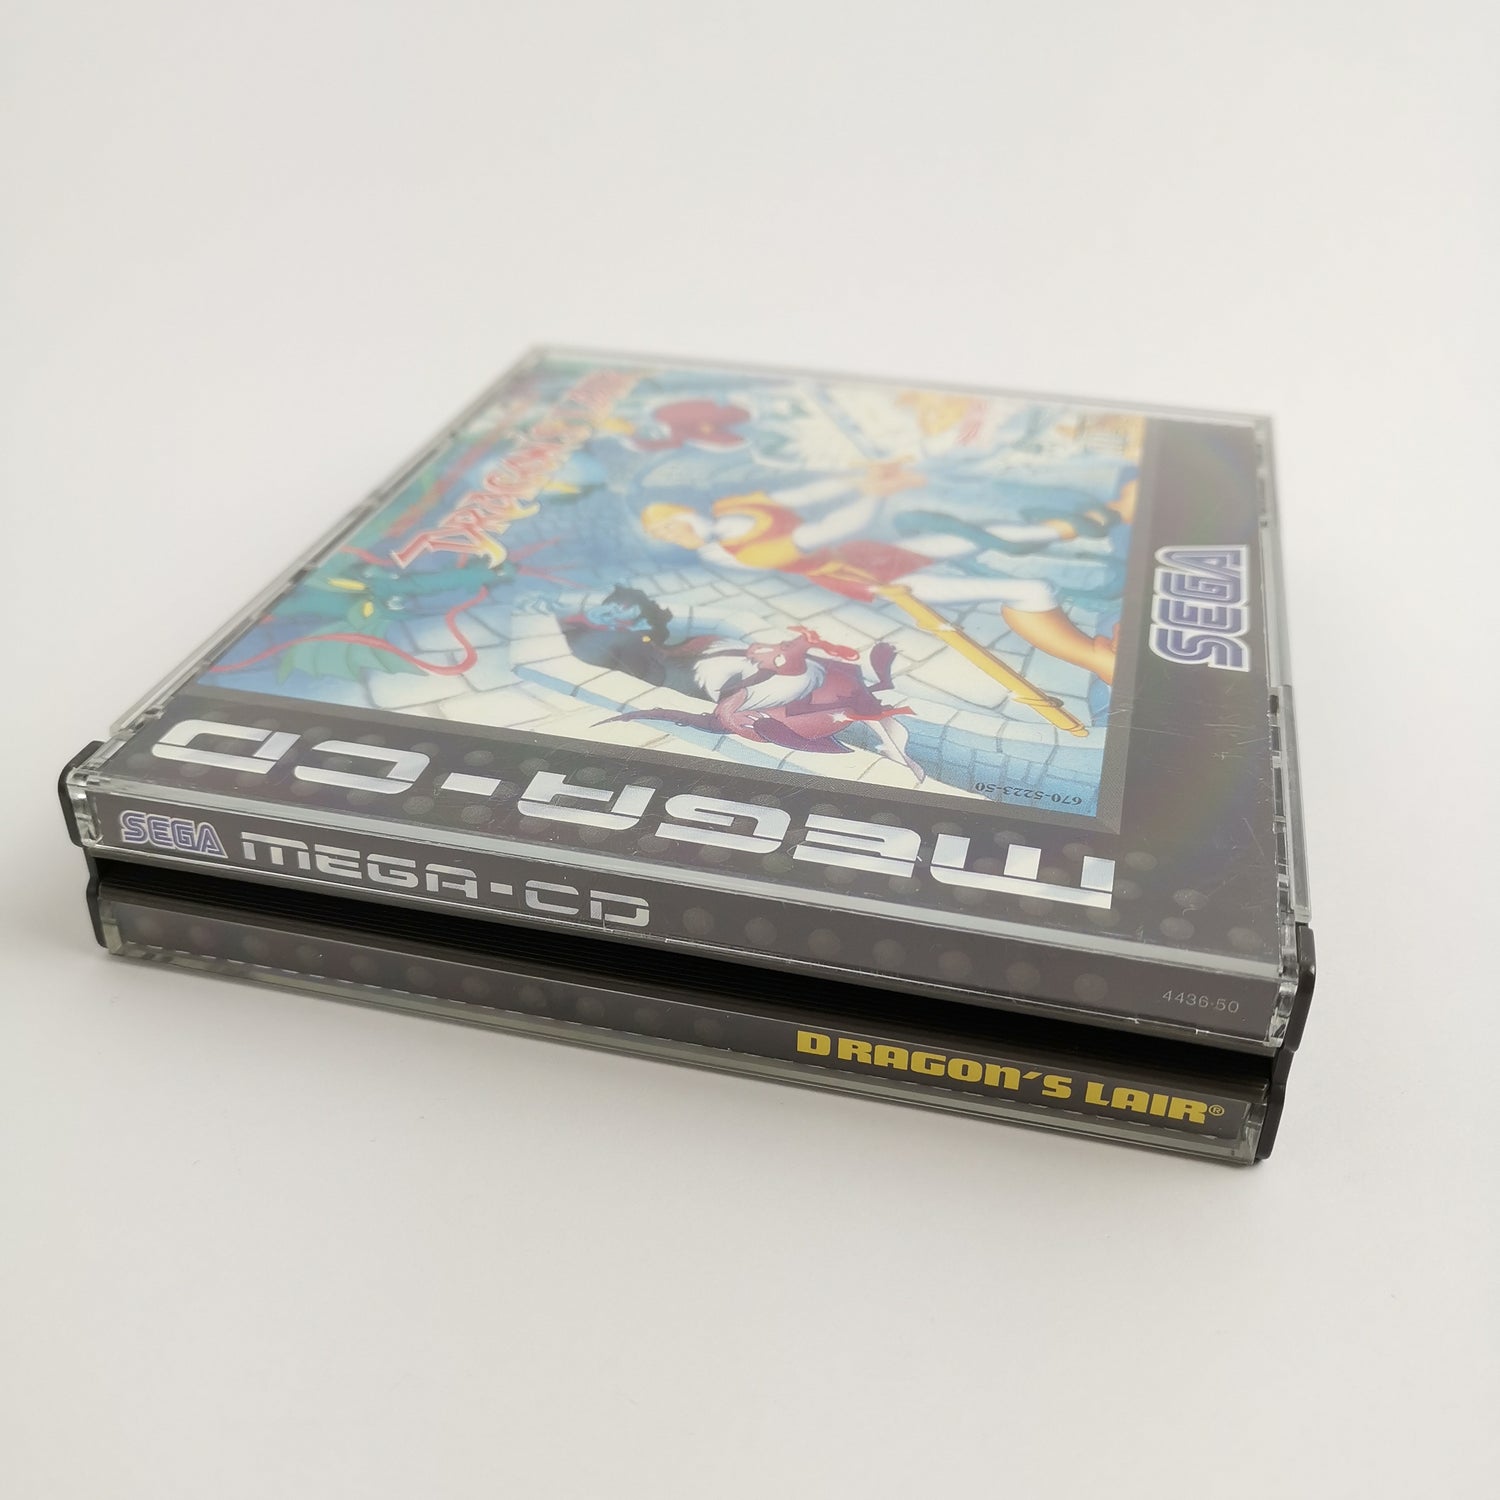 Sega Mega-CD game 